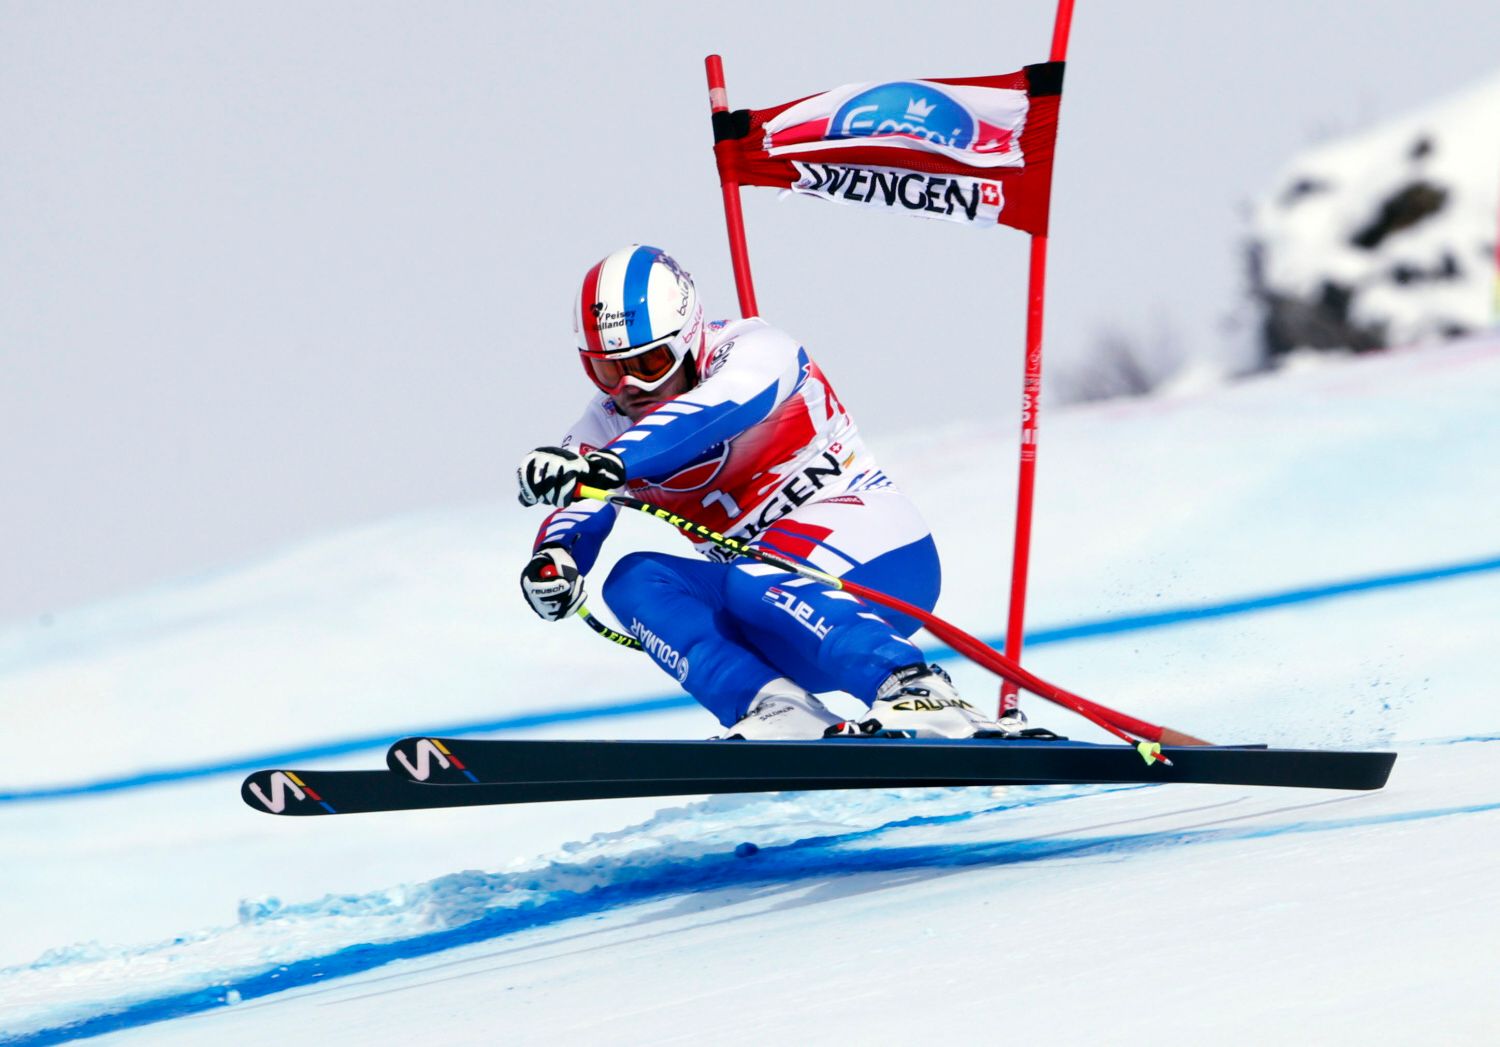 Tragédie du ski.  Le skieur alpin français Poisson est décédé à l’âge de 35 ans après une chute à l’entraînement